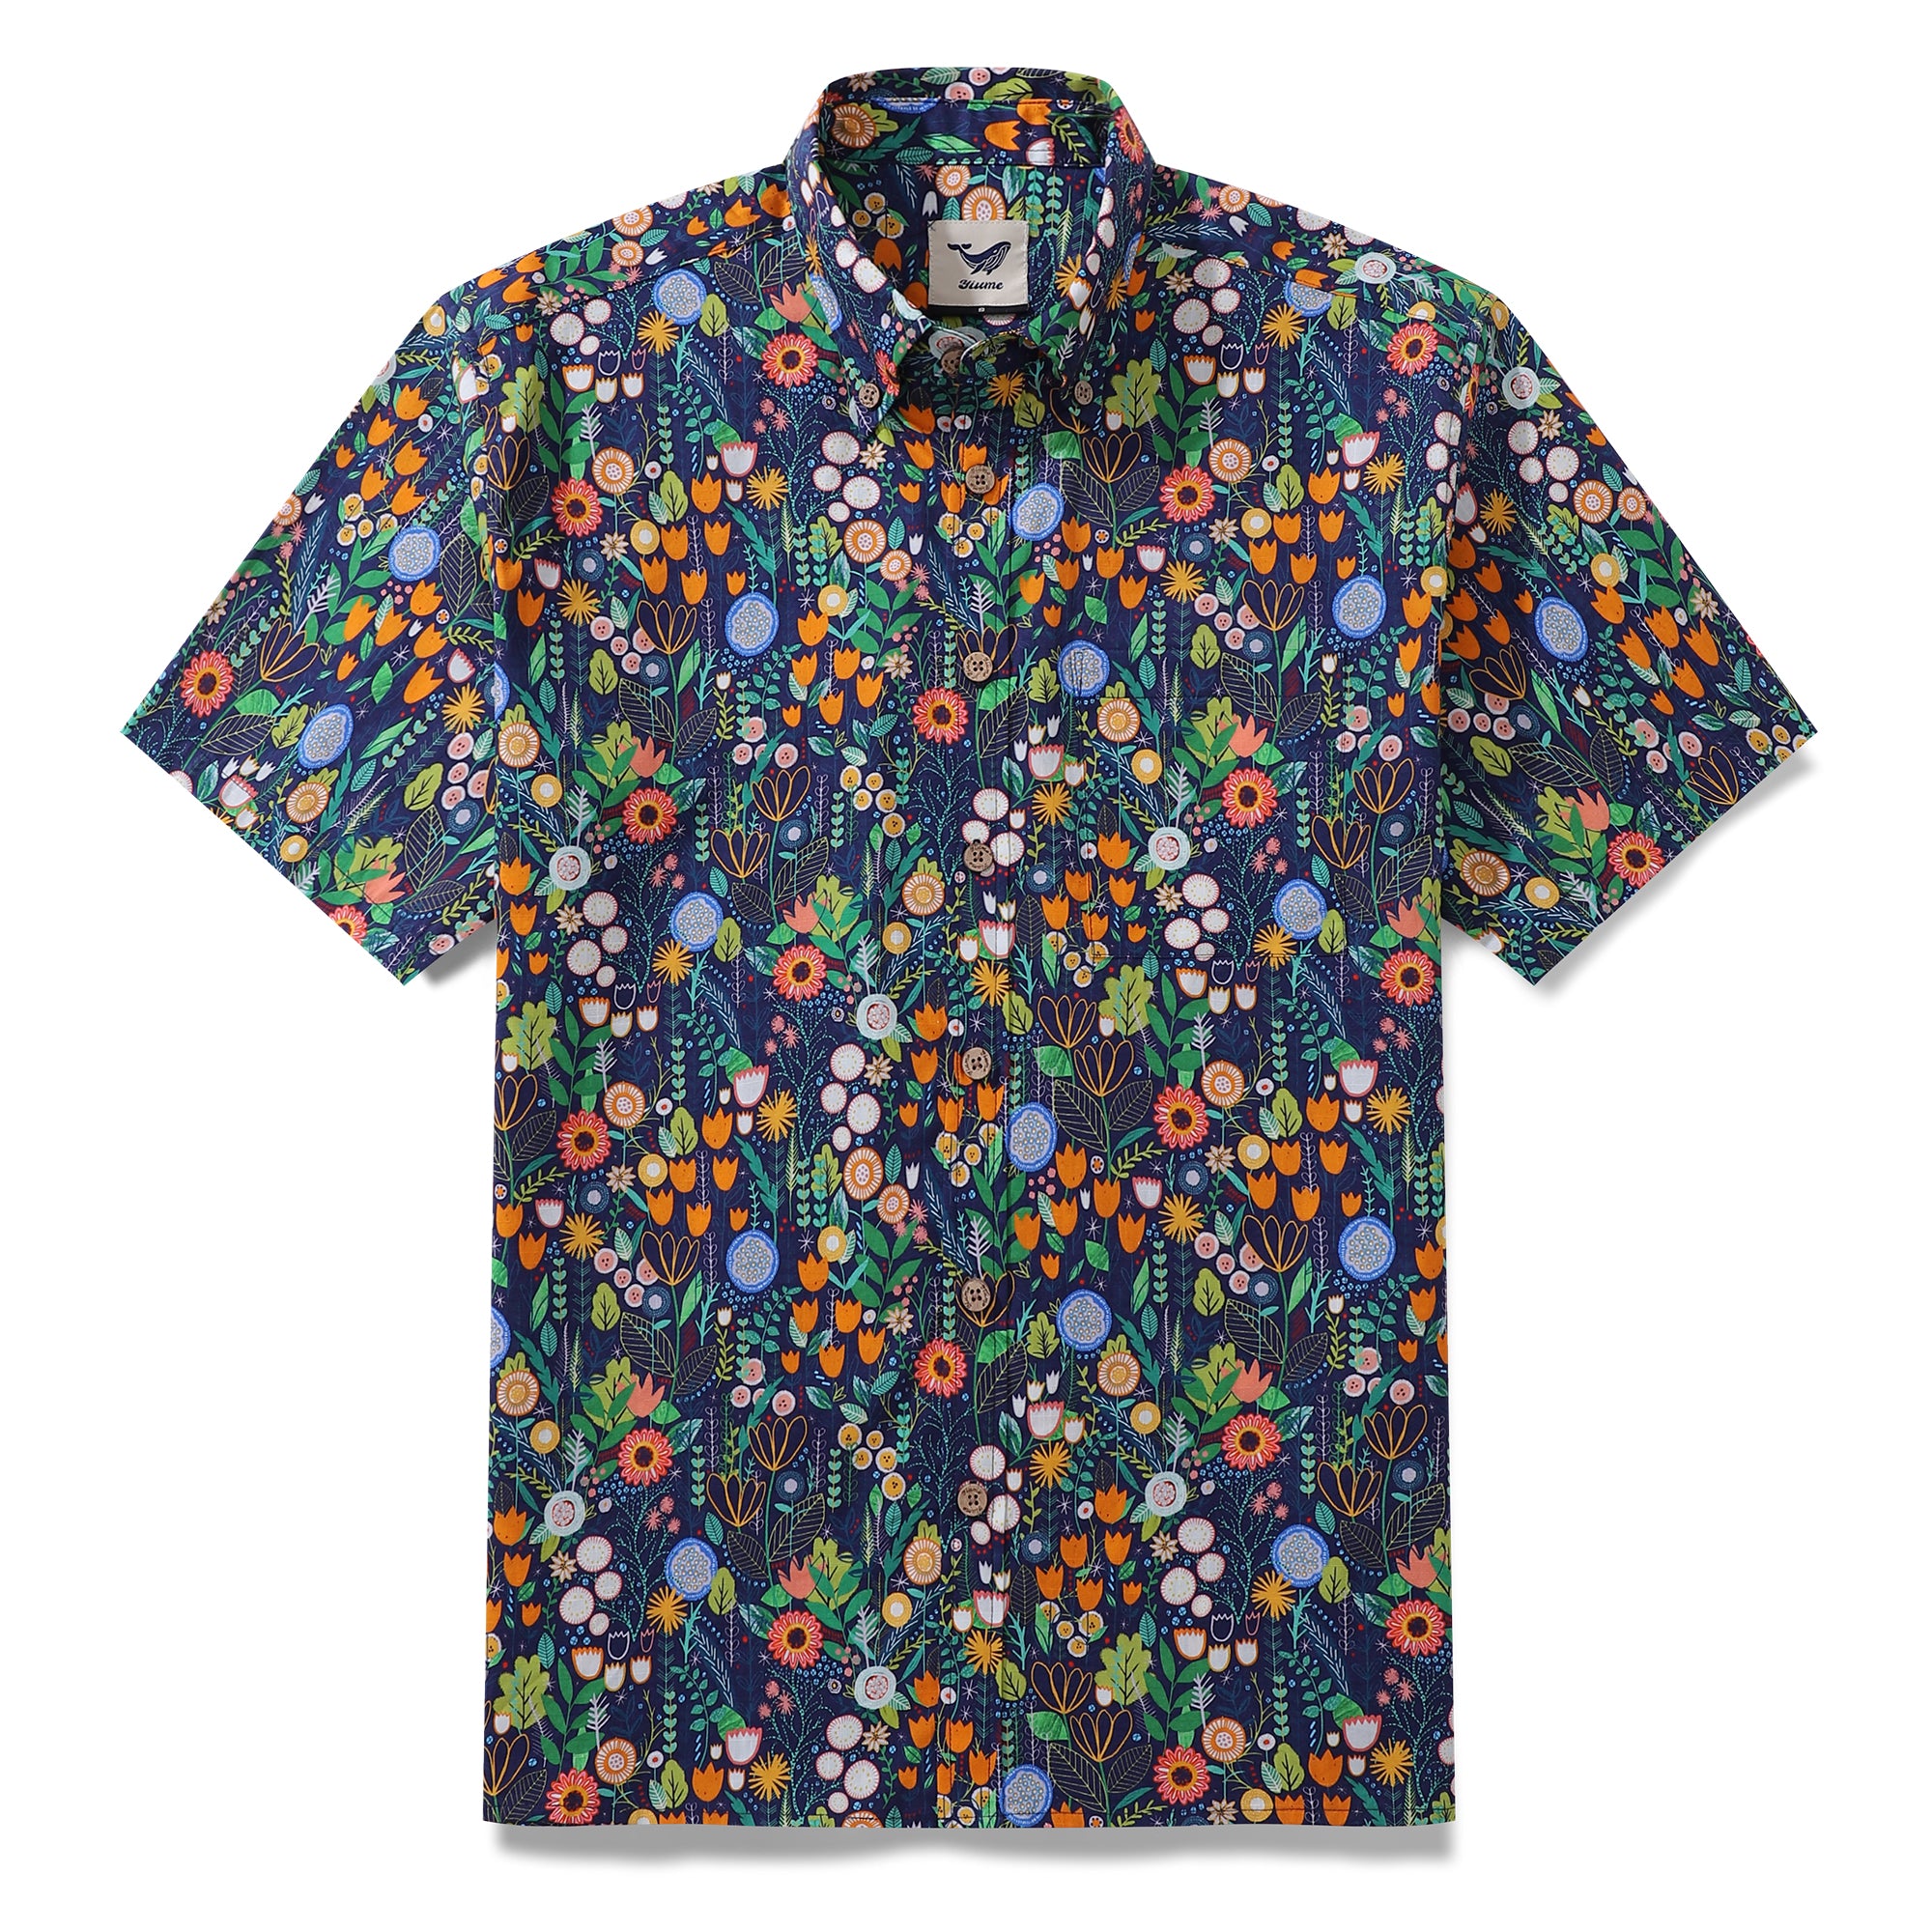 Floral Hawaiian Shirt For Men Button-down Short Sleeve 100% Cotton Shirt